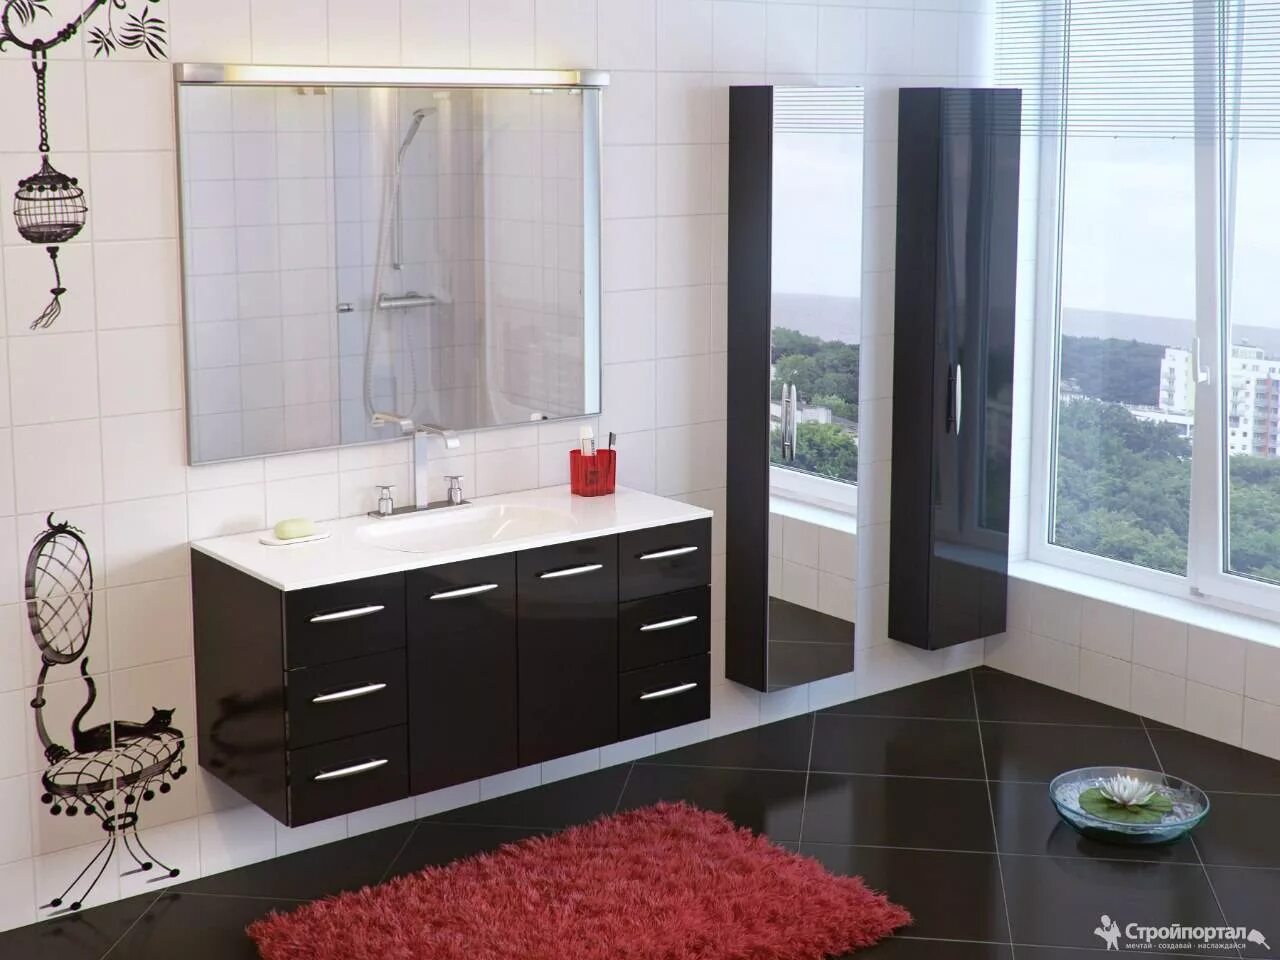 Мебель для ванной комнаты. Красивая мебель для ванной комнаты. Комплект мебели в ванную комнату. Стильная ванная мебель. Мебель для ванной комнаты сайт